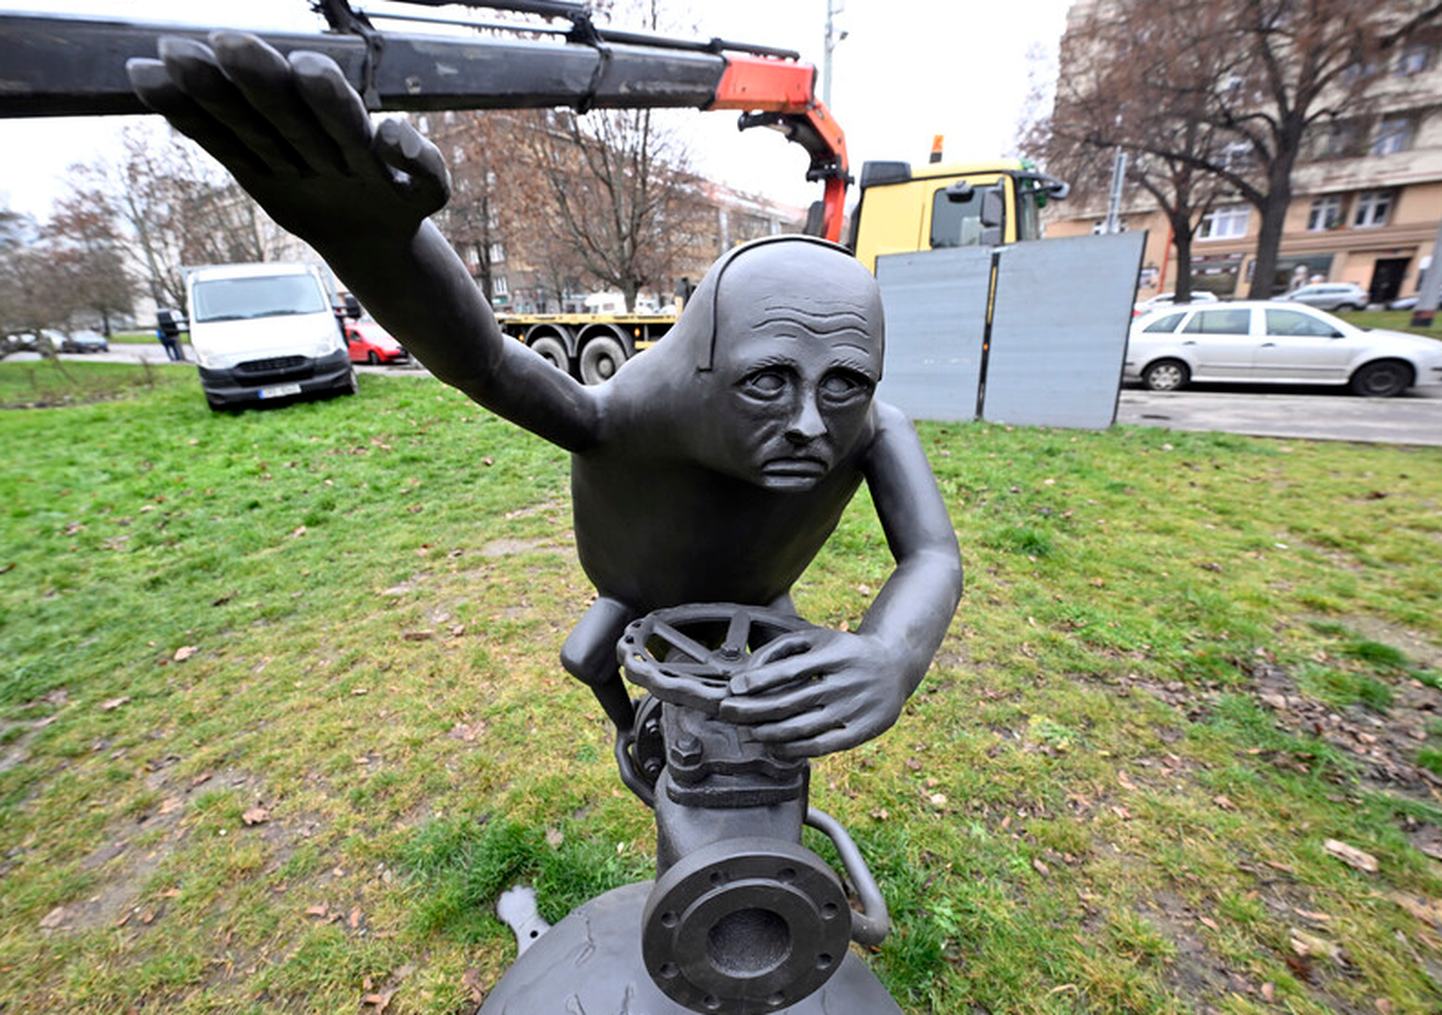 Prāgā atklāj Putina - goblina skulptūru